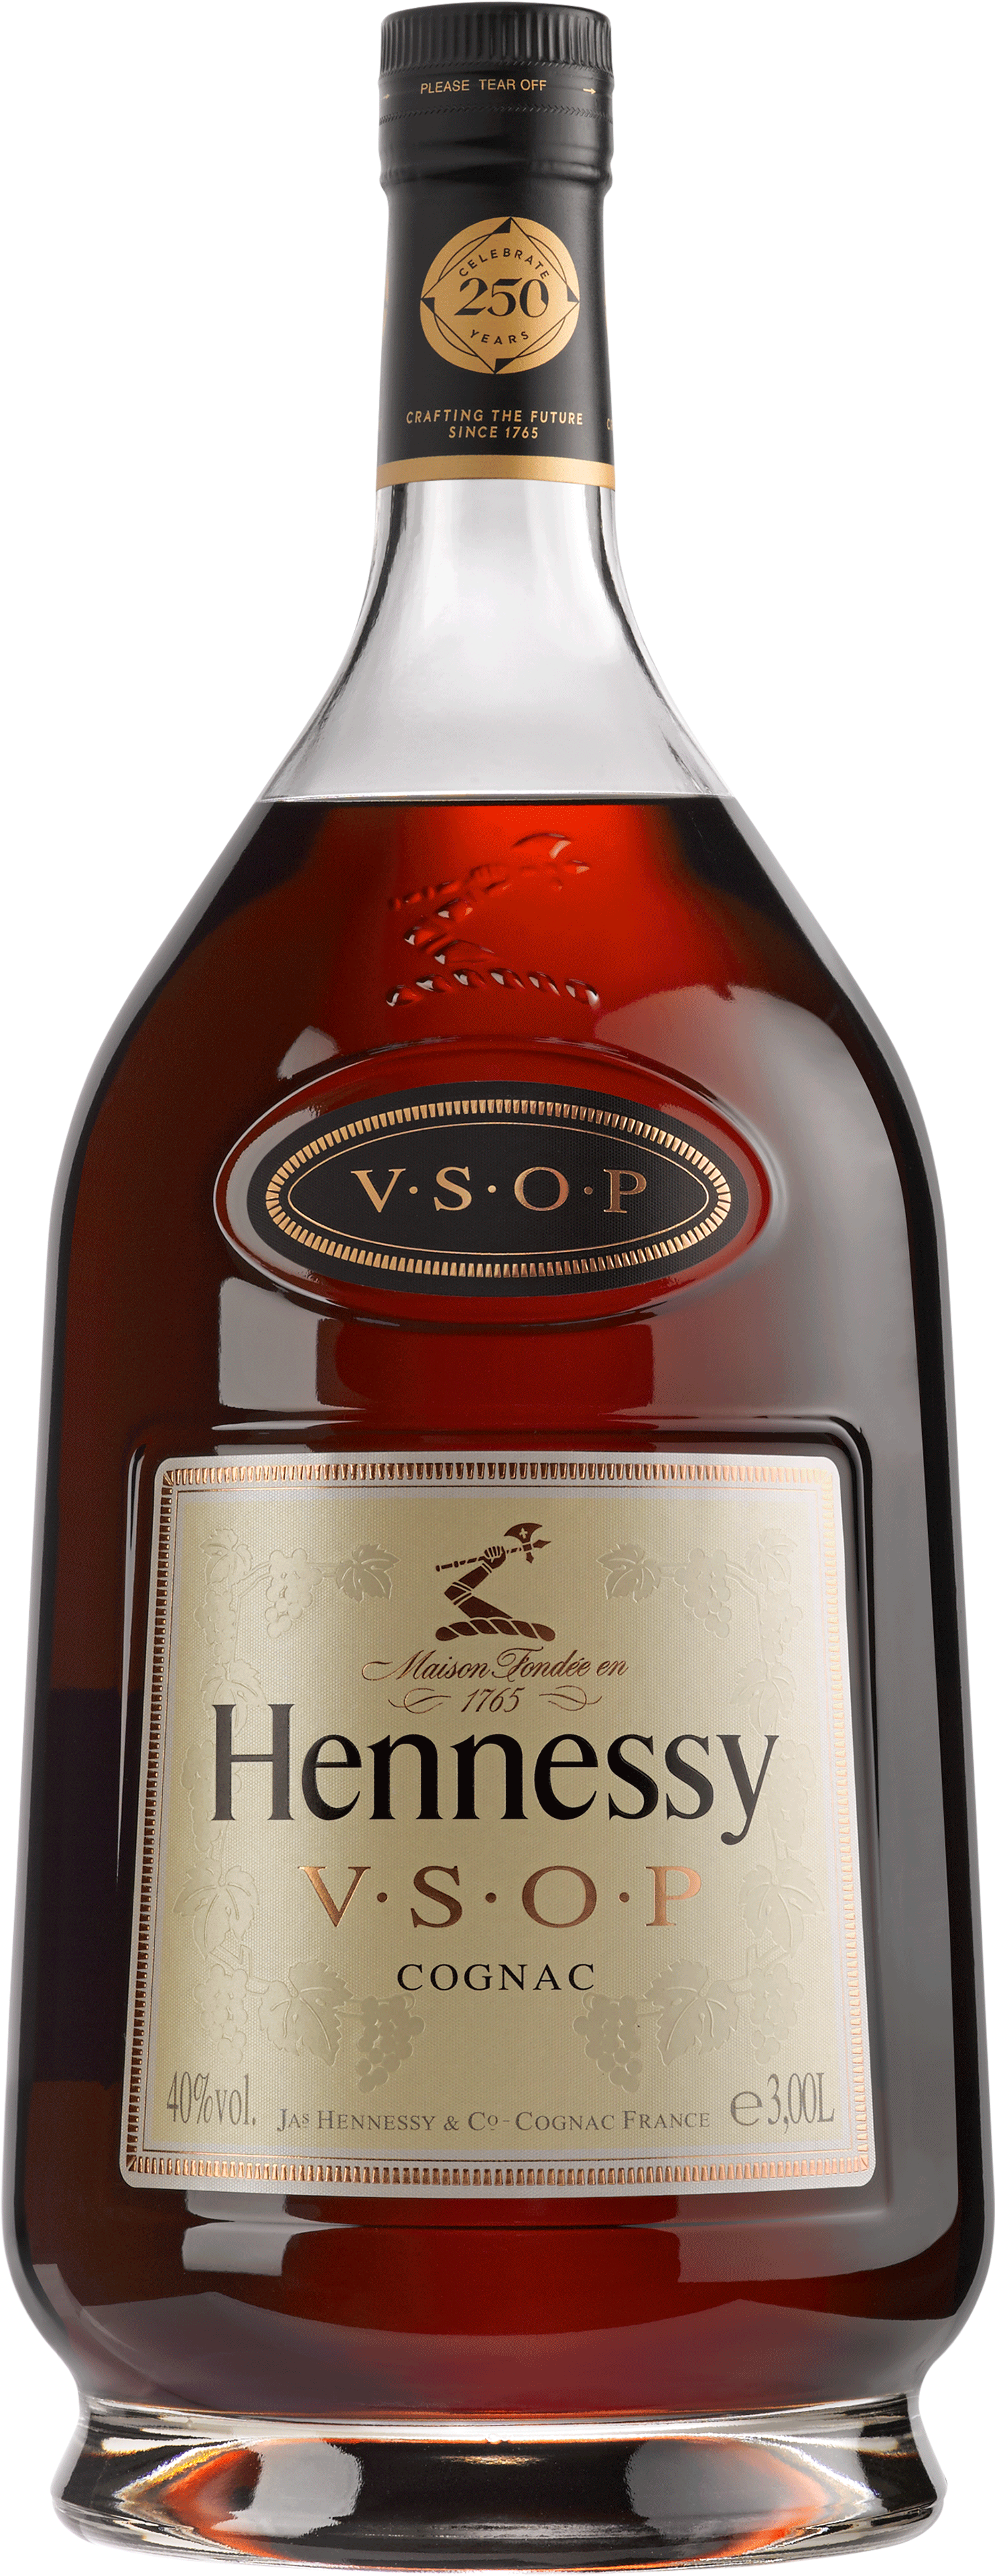 Hennessy V S O P Cognac Bottle